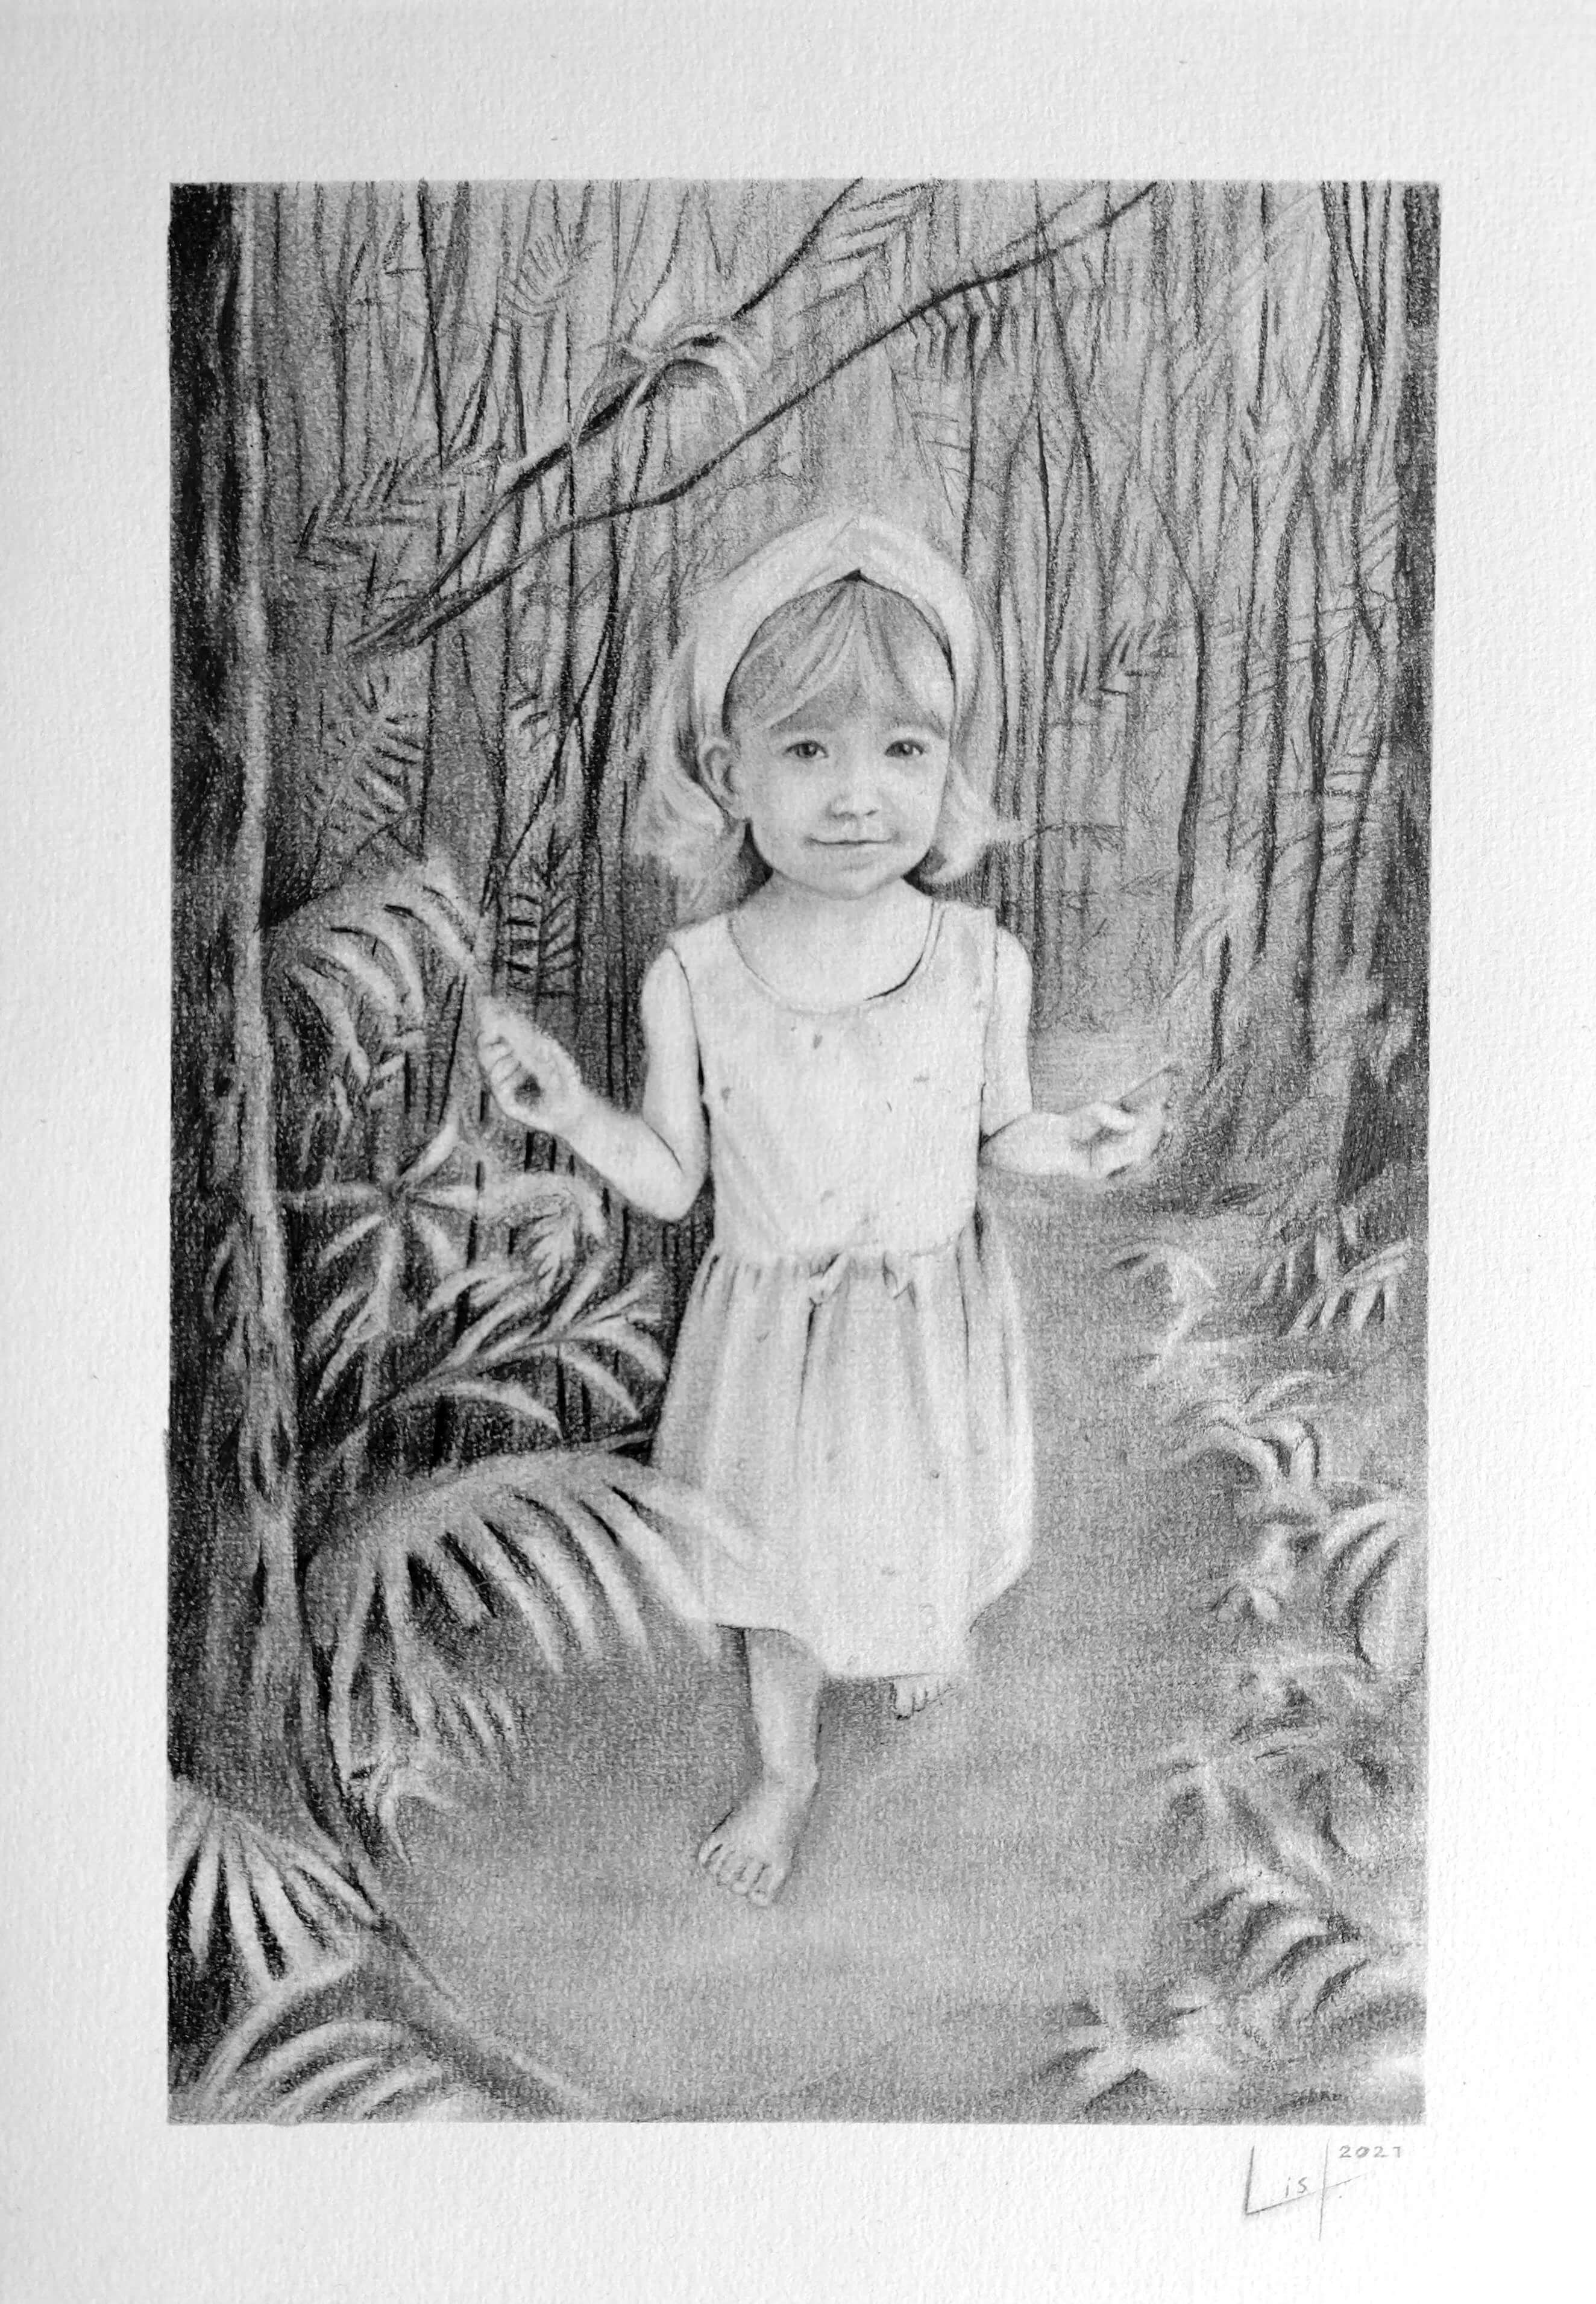 Small girl in the jungle - Pencil on Bristol paper